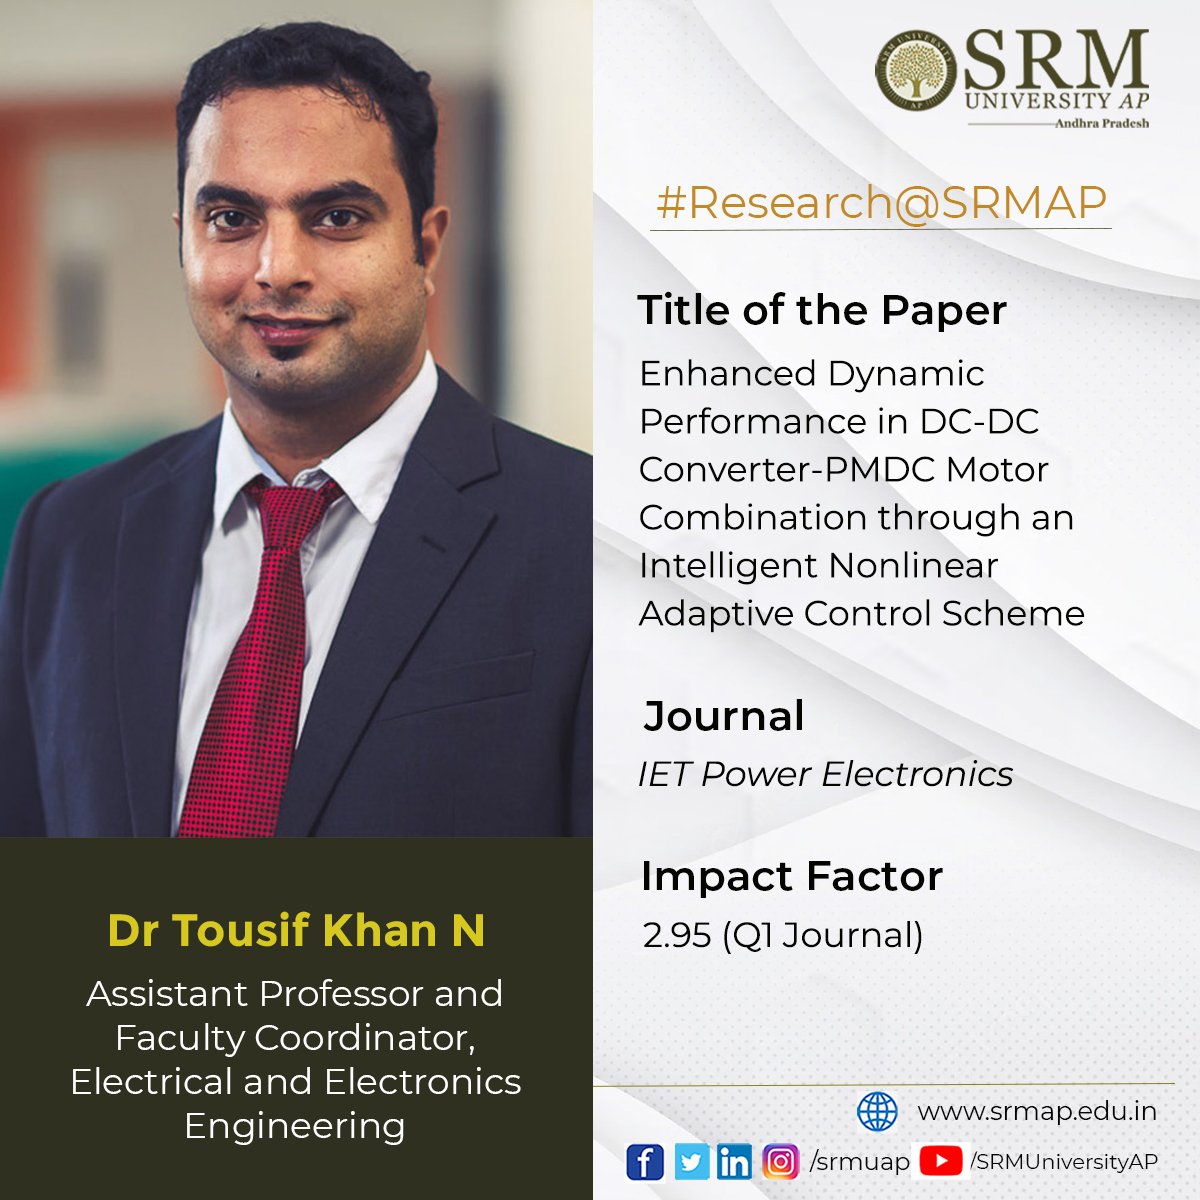 Dr Tousif Khan